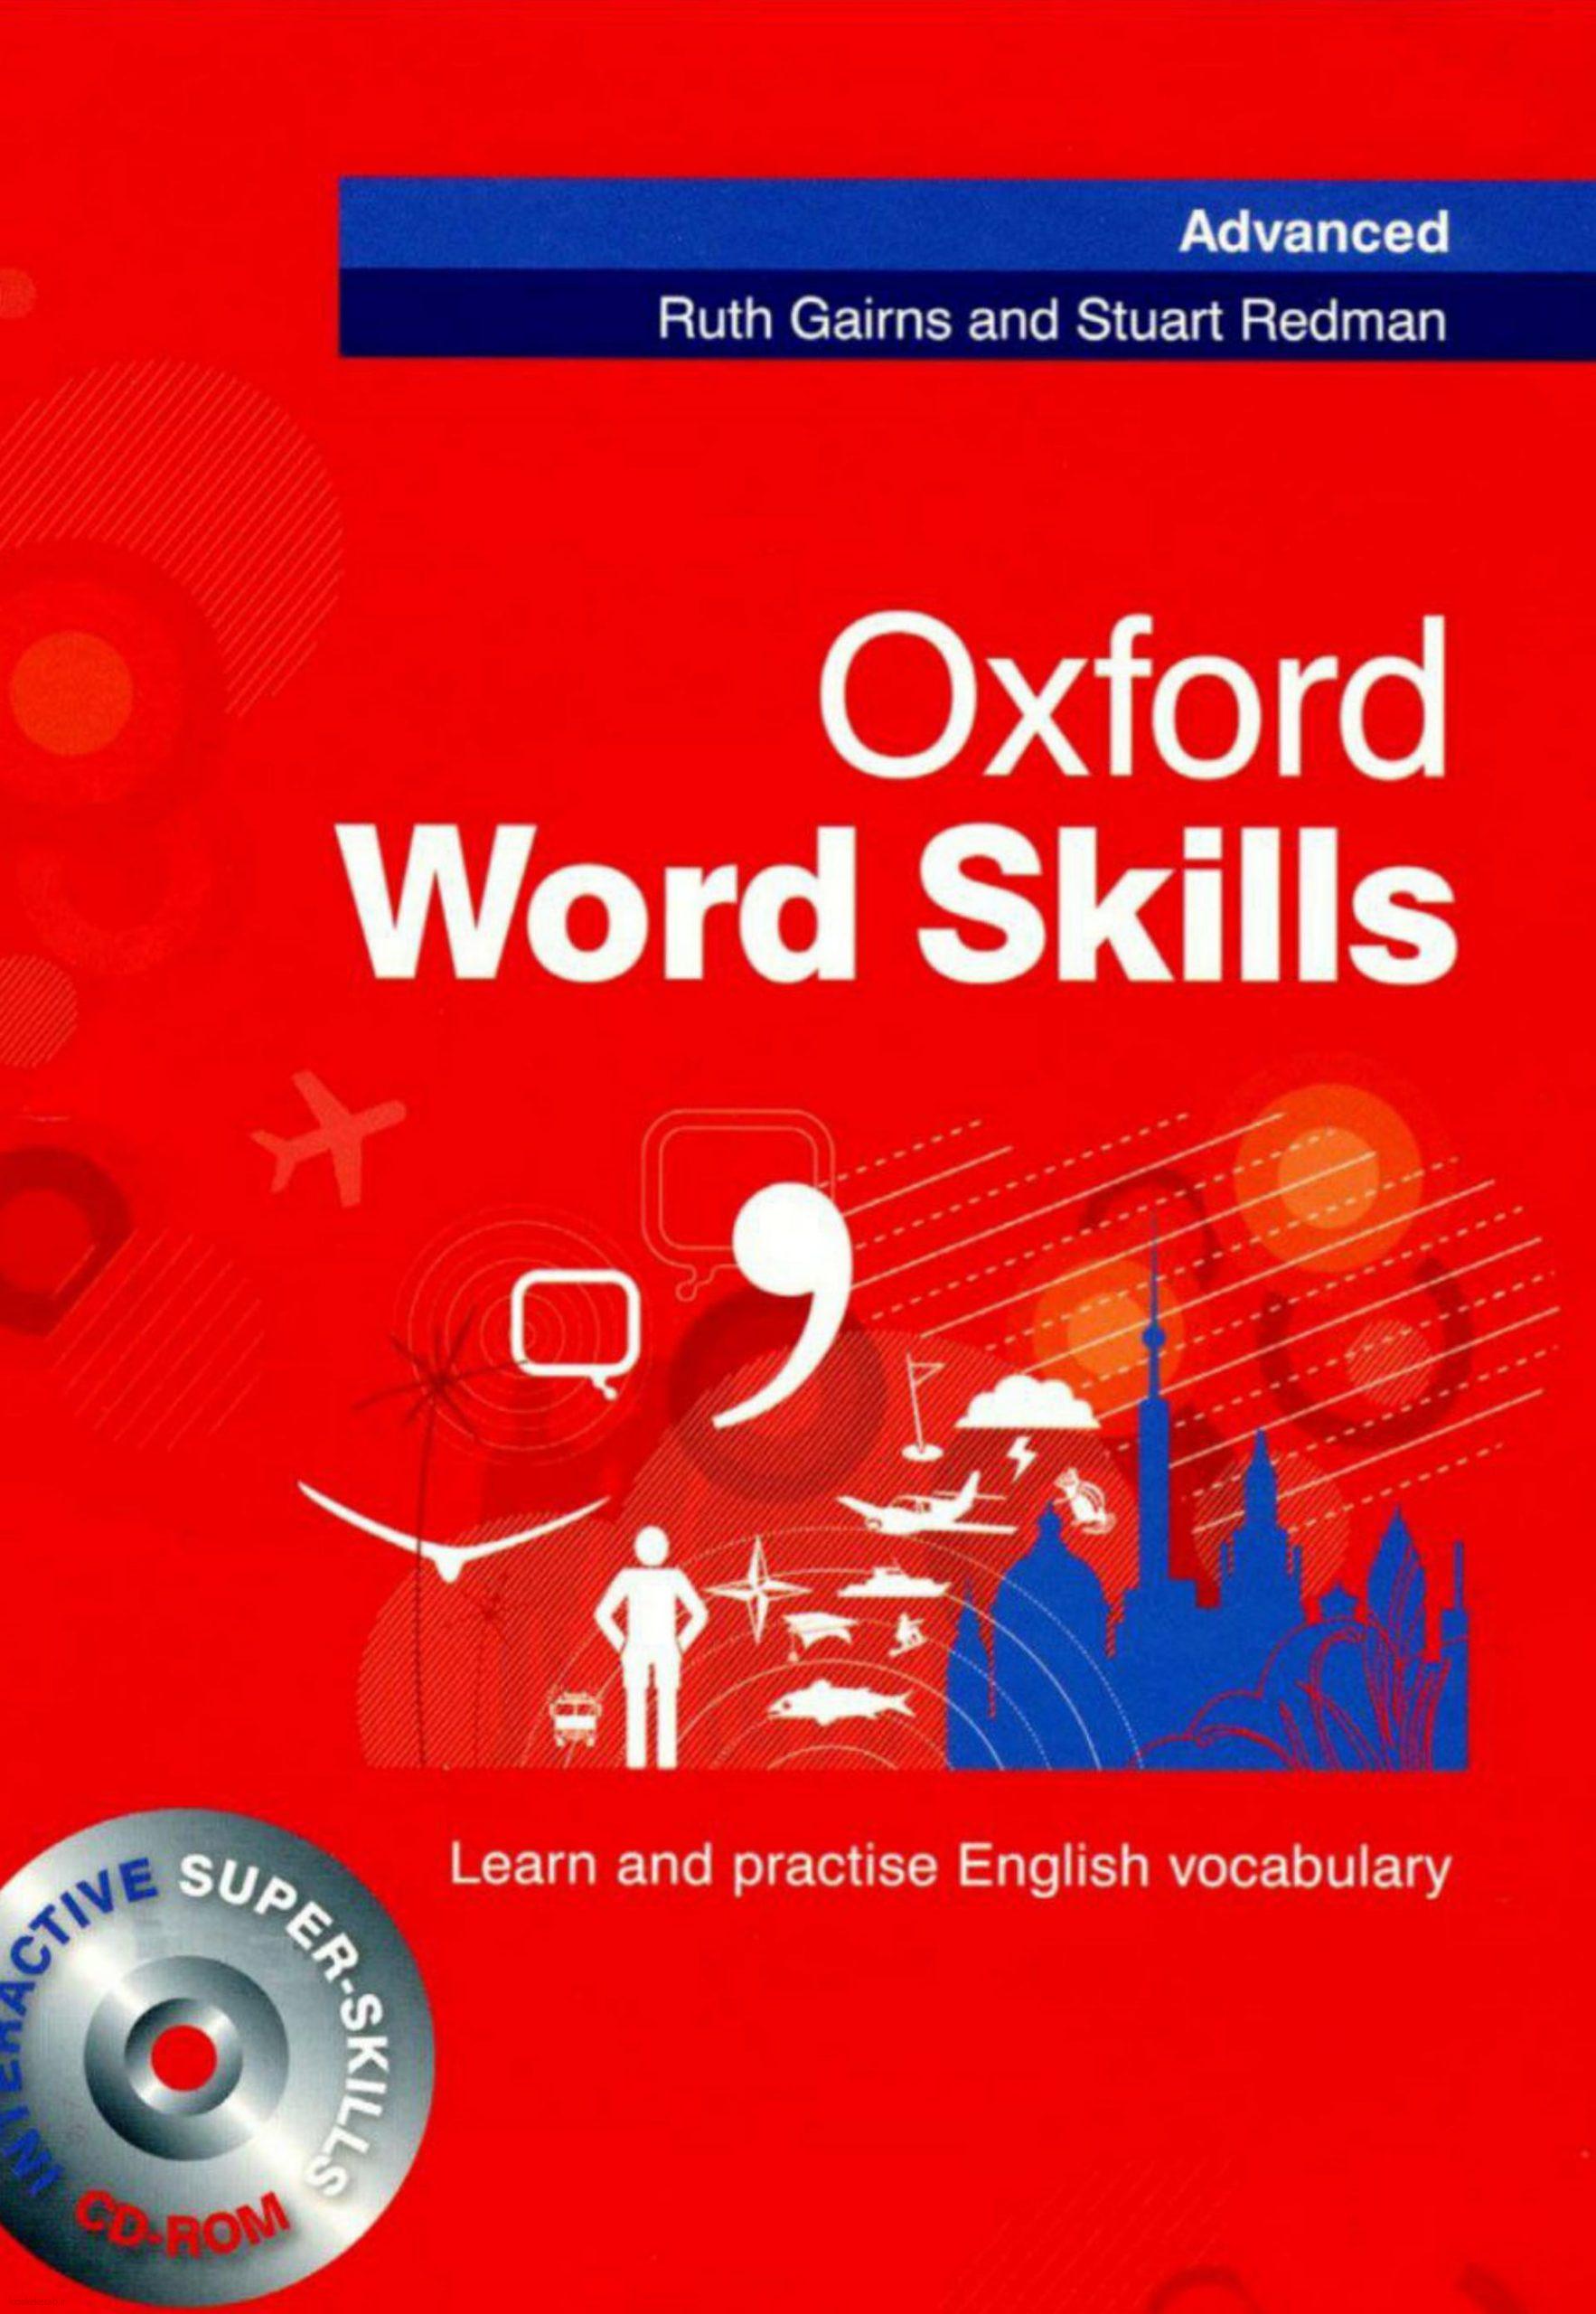 دانلود کتاب انگلیسی oxford word skills